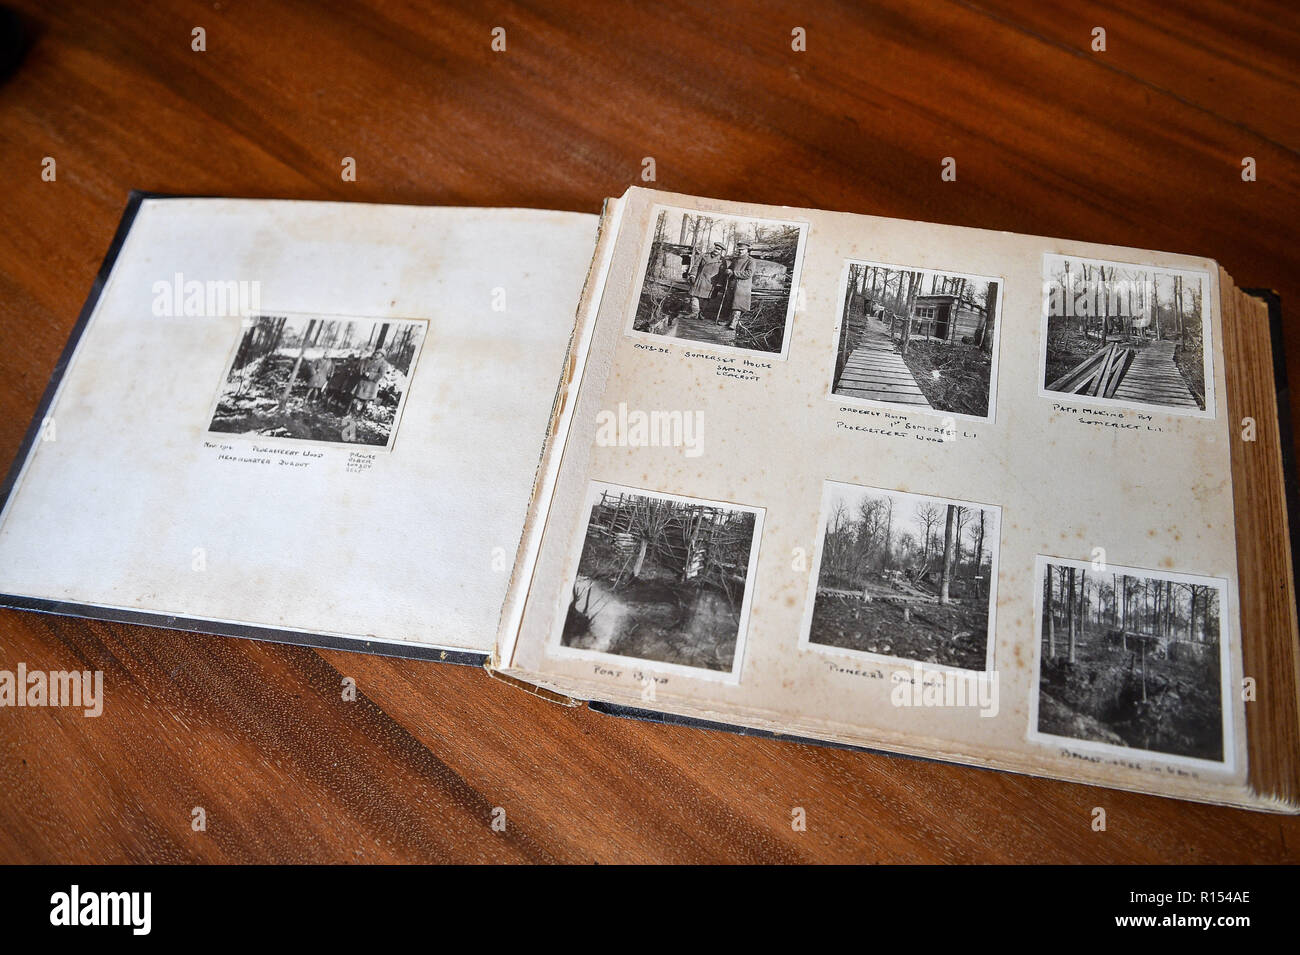 Un album photo contenant des images prises par le Capitaine Robert Harley Egerton Bennett, de son temps à Ypres, en Belgique, au cours de la Première Guerre mondiale, qui a été trouvé à son domicile par sa famille. Banque D'Images